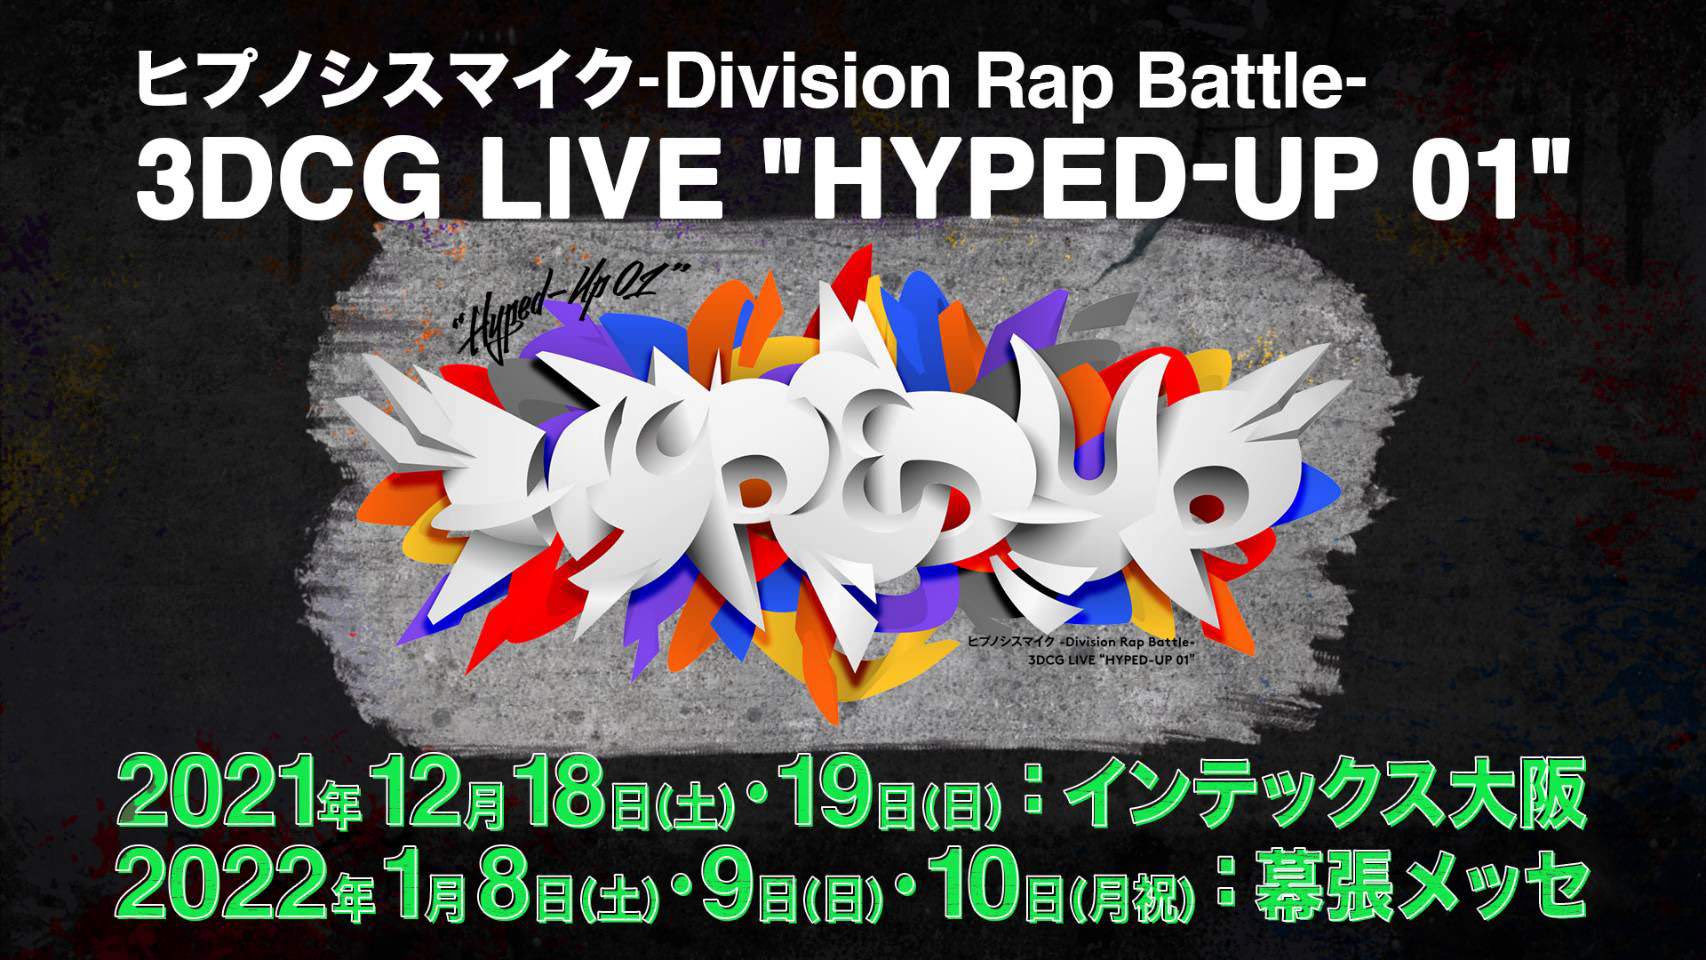 ヒプノシスマイク 初の3DCGライブ「HYPED-UP 01」2都市で開催!